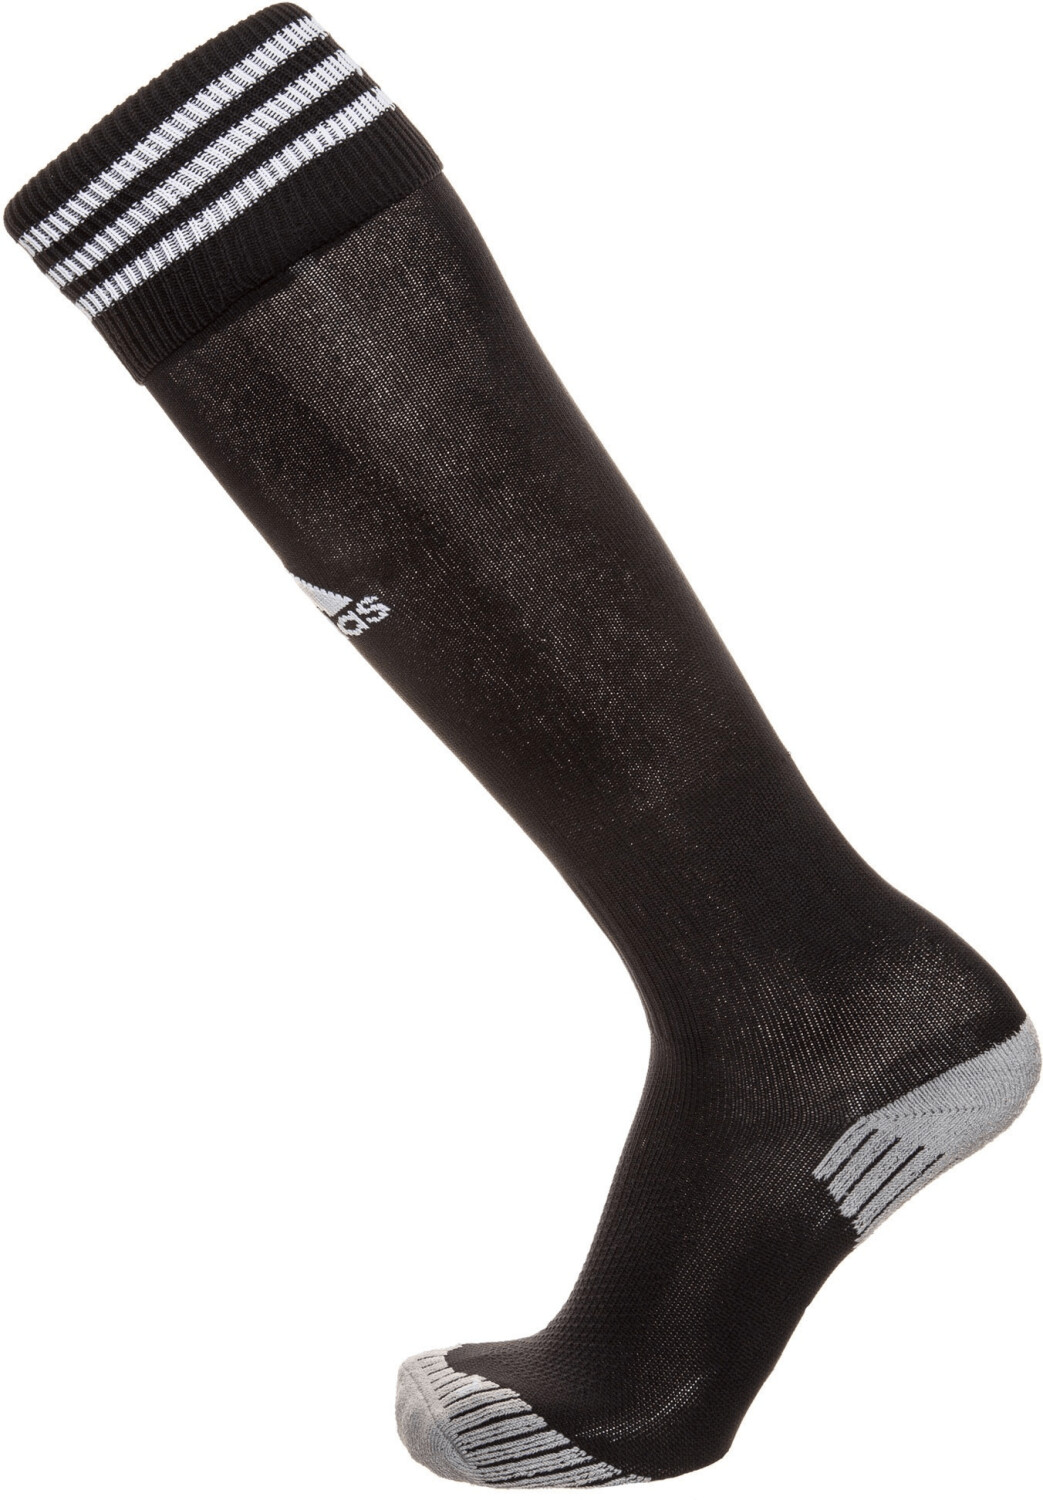 Adidas Adisocks 12 Football Socks